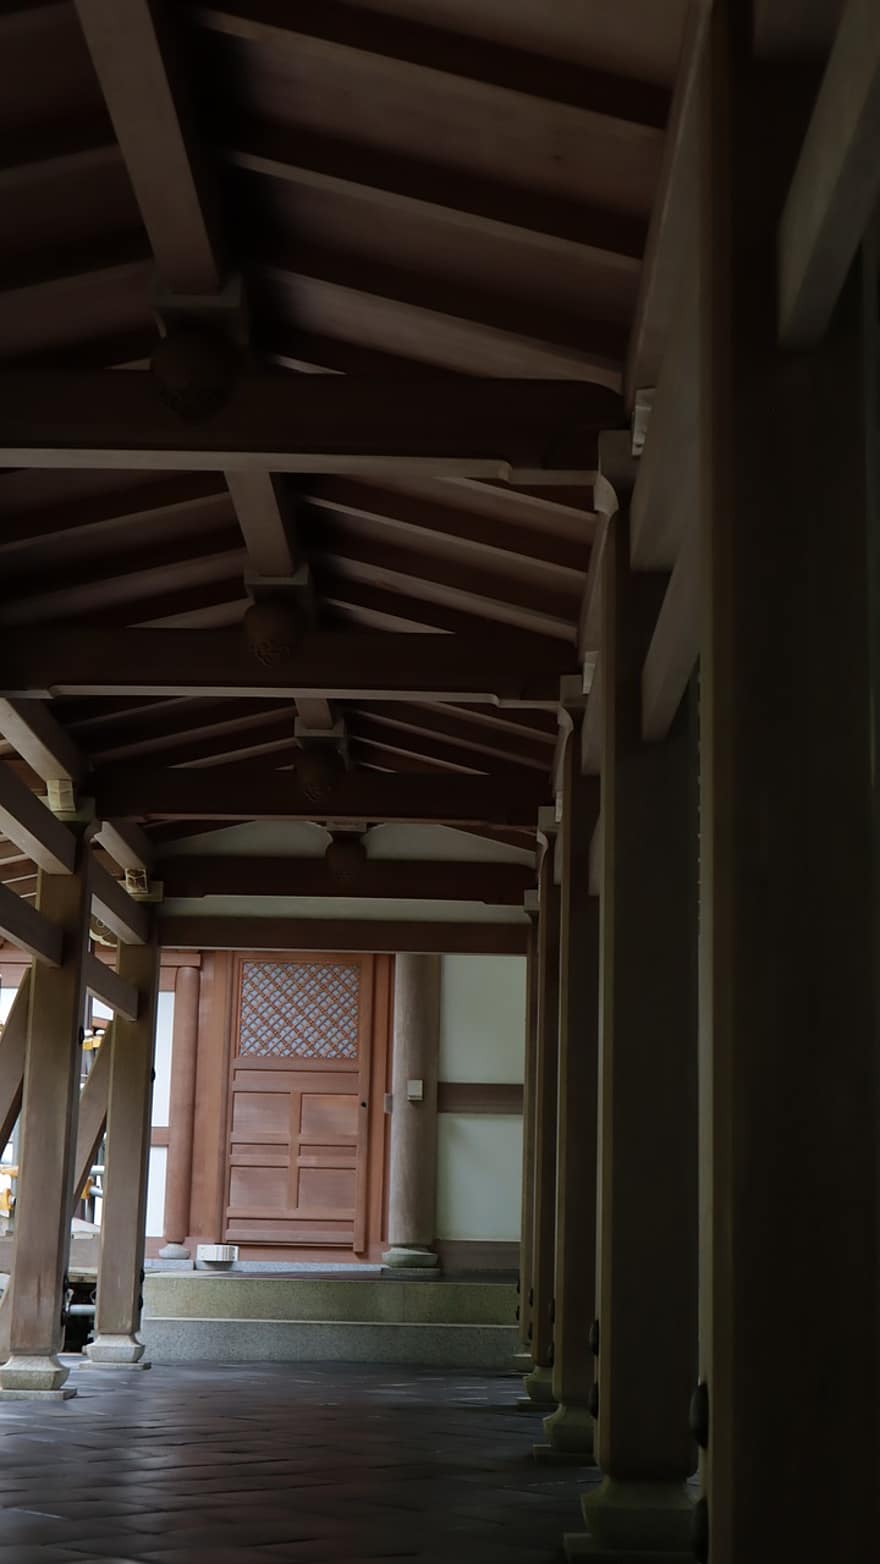 معبد ، الرواق ، الركائز ، خشبي ، قديم ، اليابان ، في الداخل ، هندسة معمارية ، غرفة محلية ، سقف ، خشب